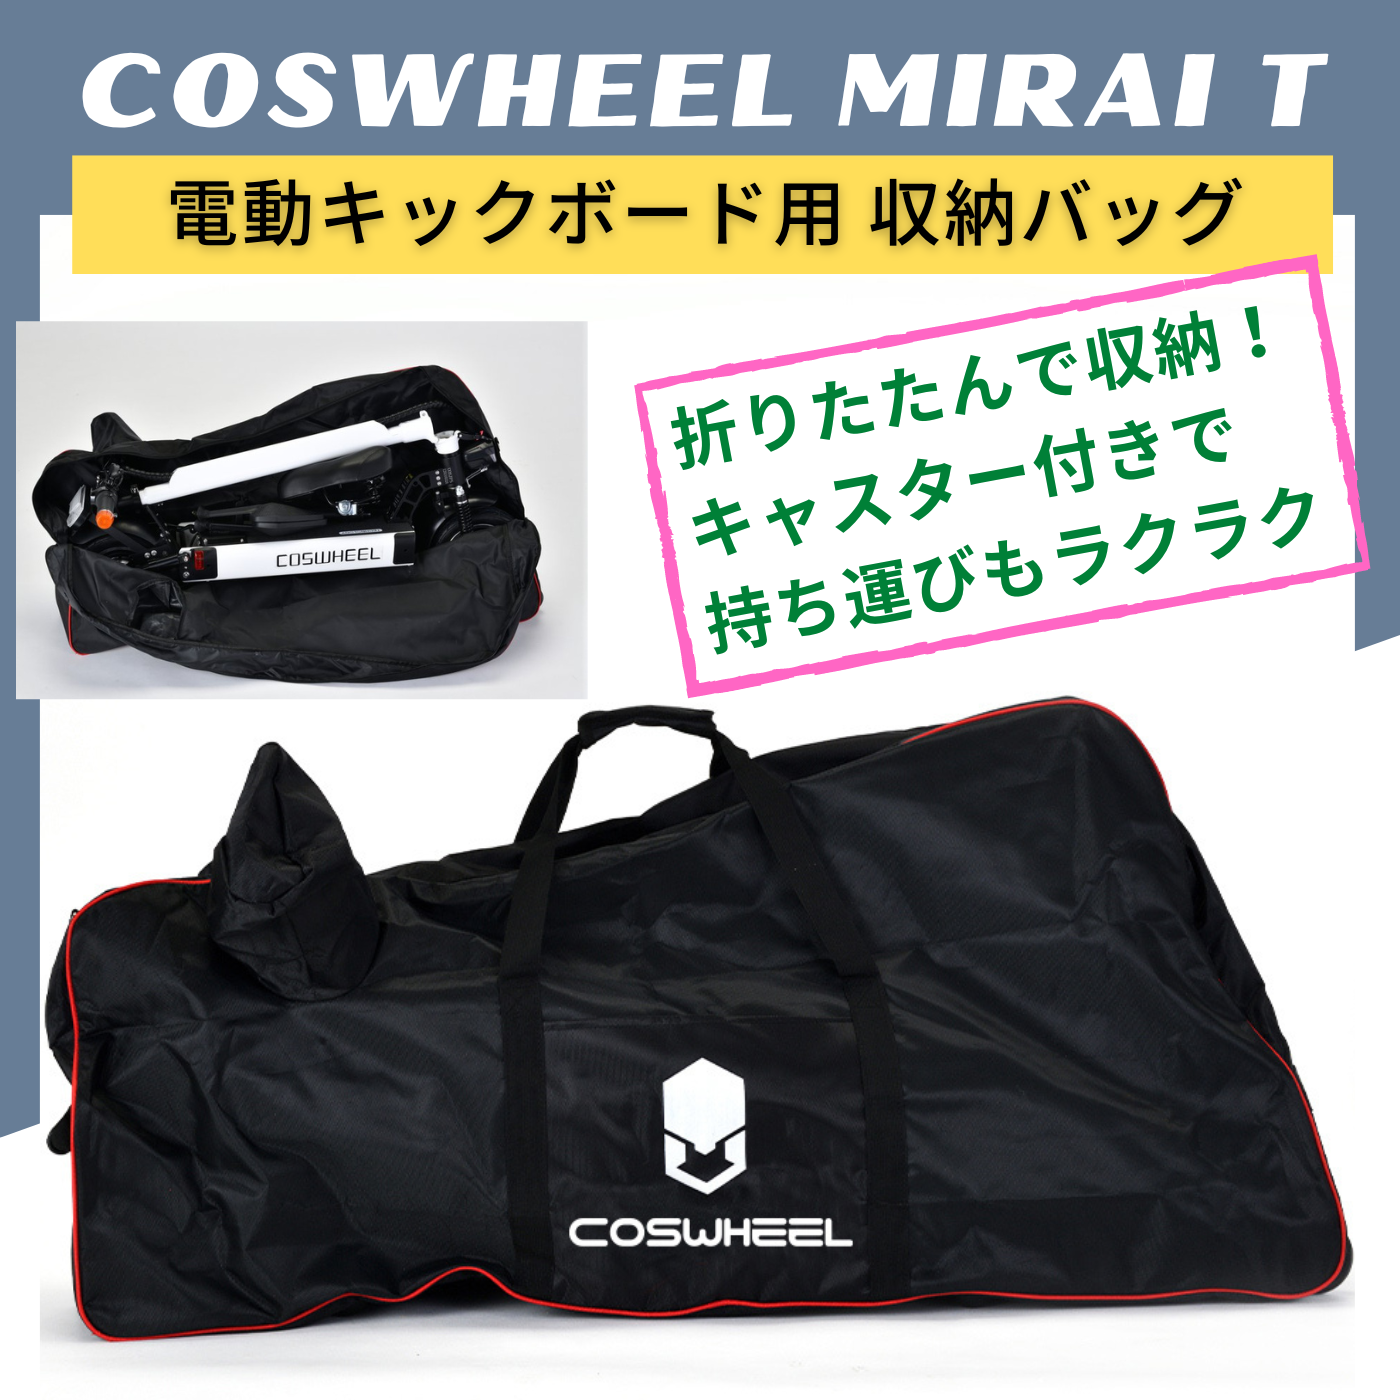 【２月下旬再入荷】COSWHEEL MIRAI T 電動キックボード用 キャスター付き 収納バッグ